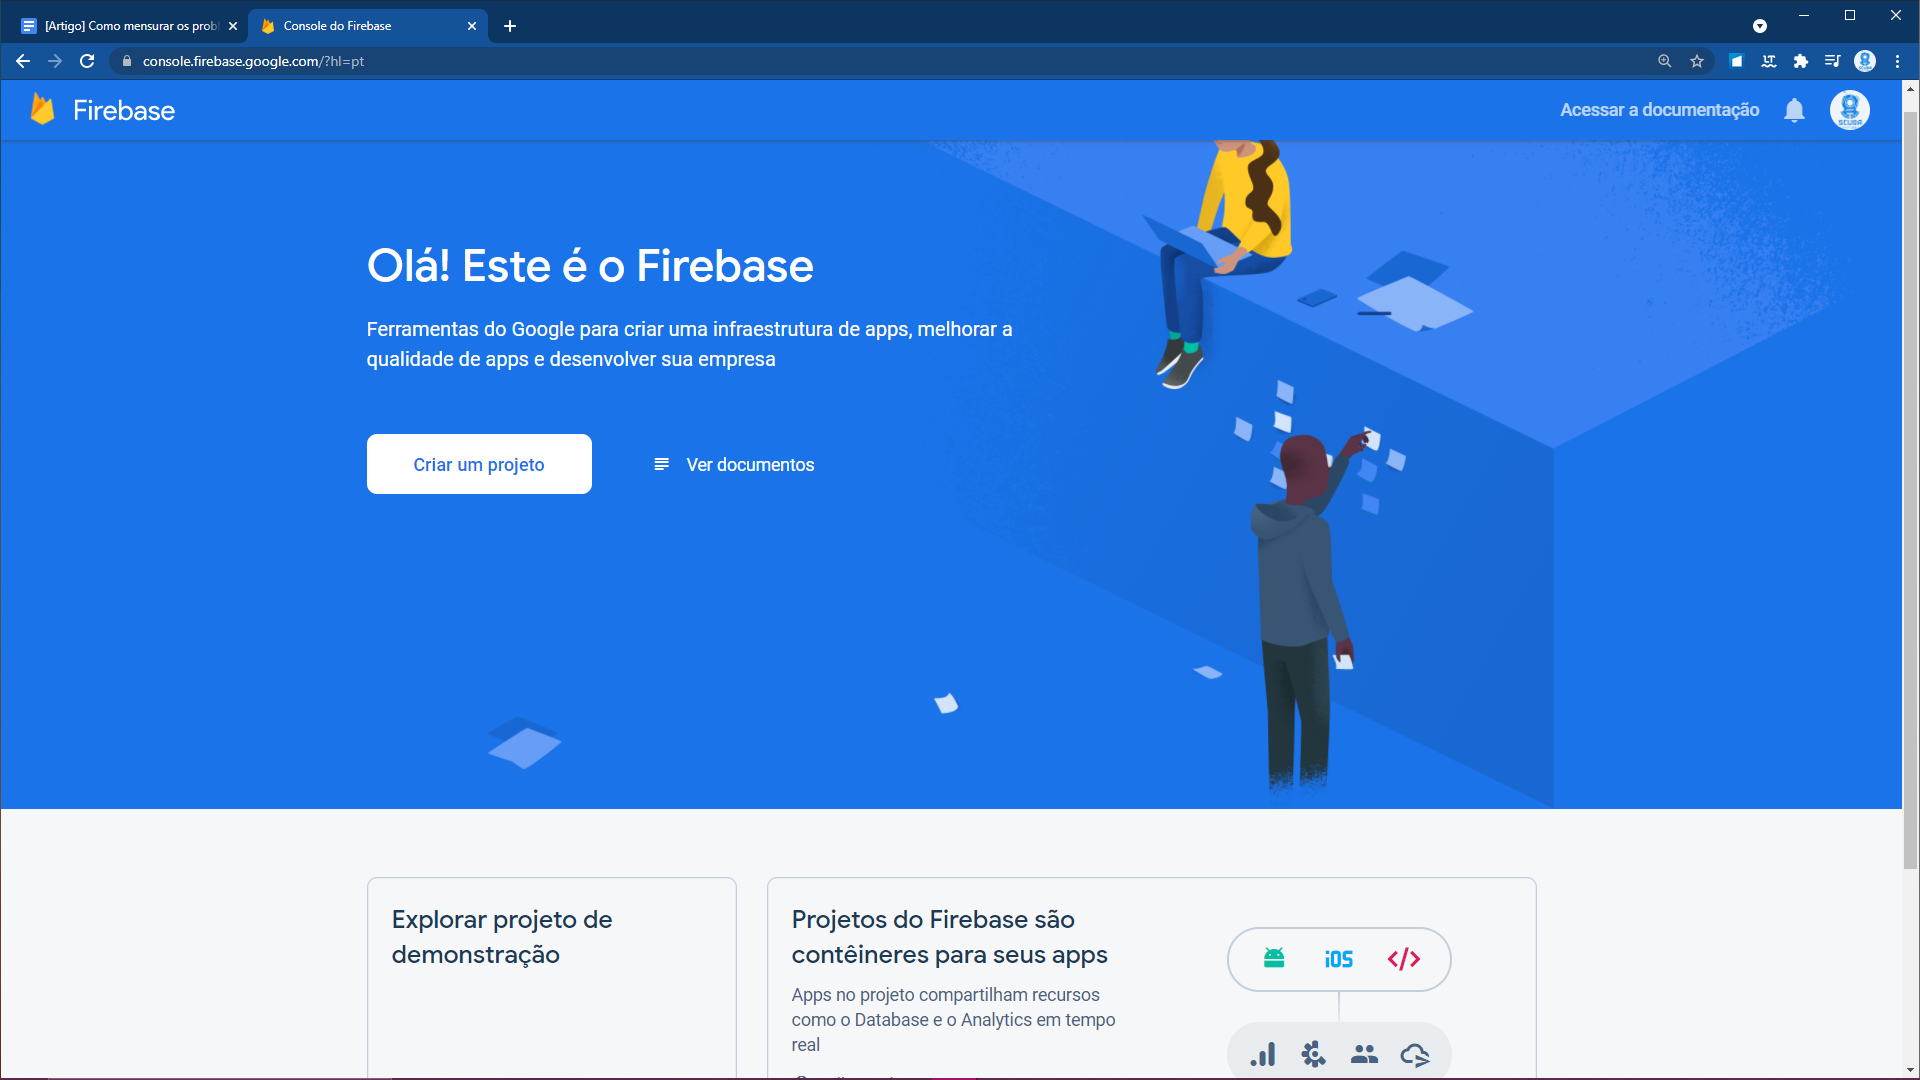 Na imagem, há a página inicial do Firebase. Em destaque na tela, há uma apresentação com os dizeres “Olá! Este é o Firebase” e um botão para criar um novo projeto.